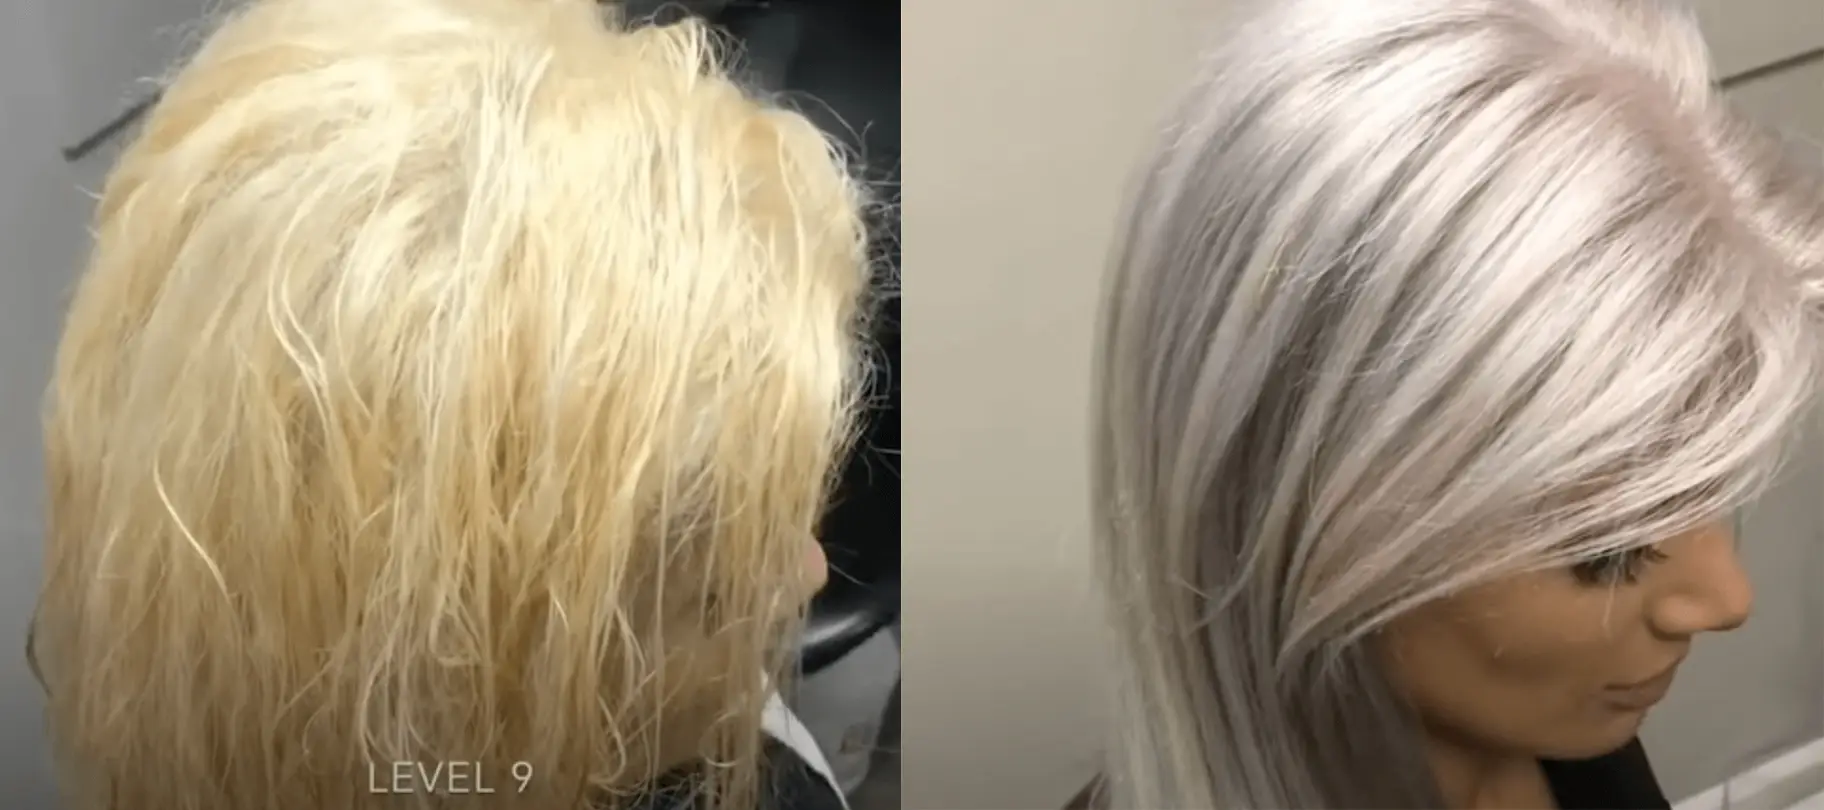 3. Blonde hair toners - wide 6